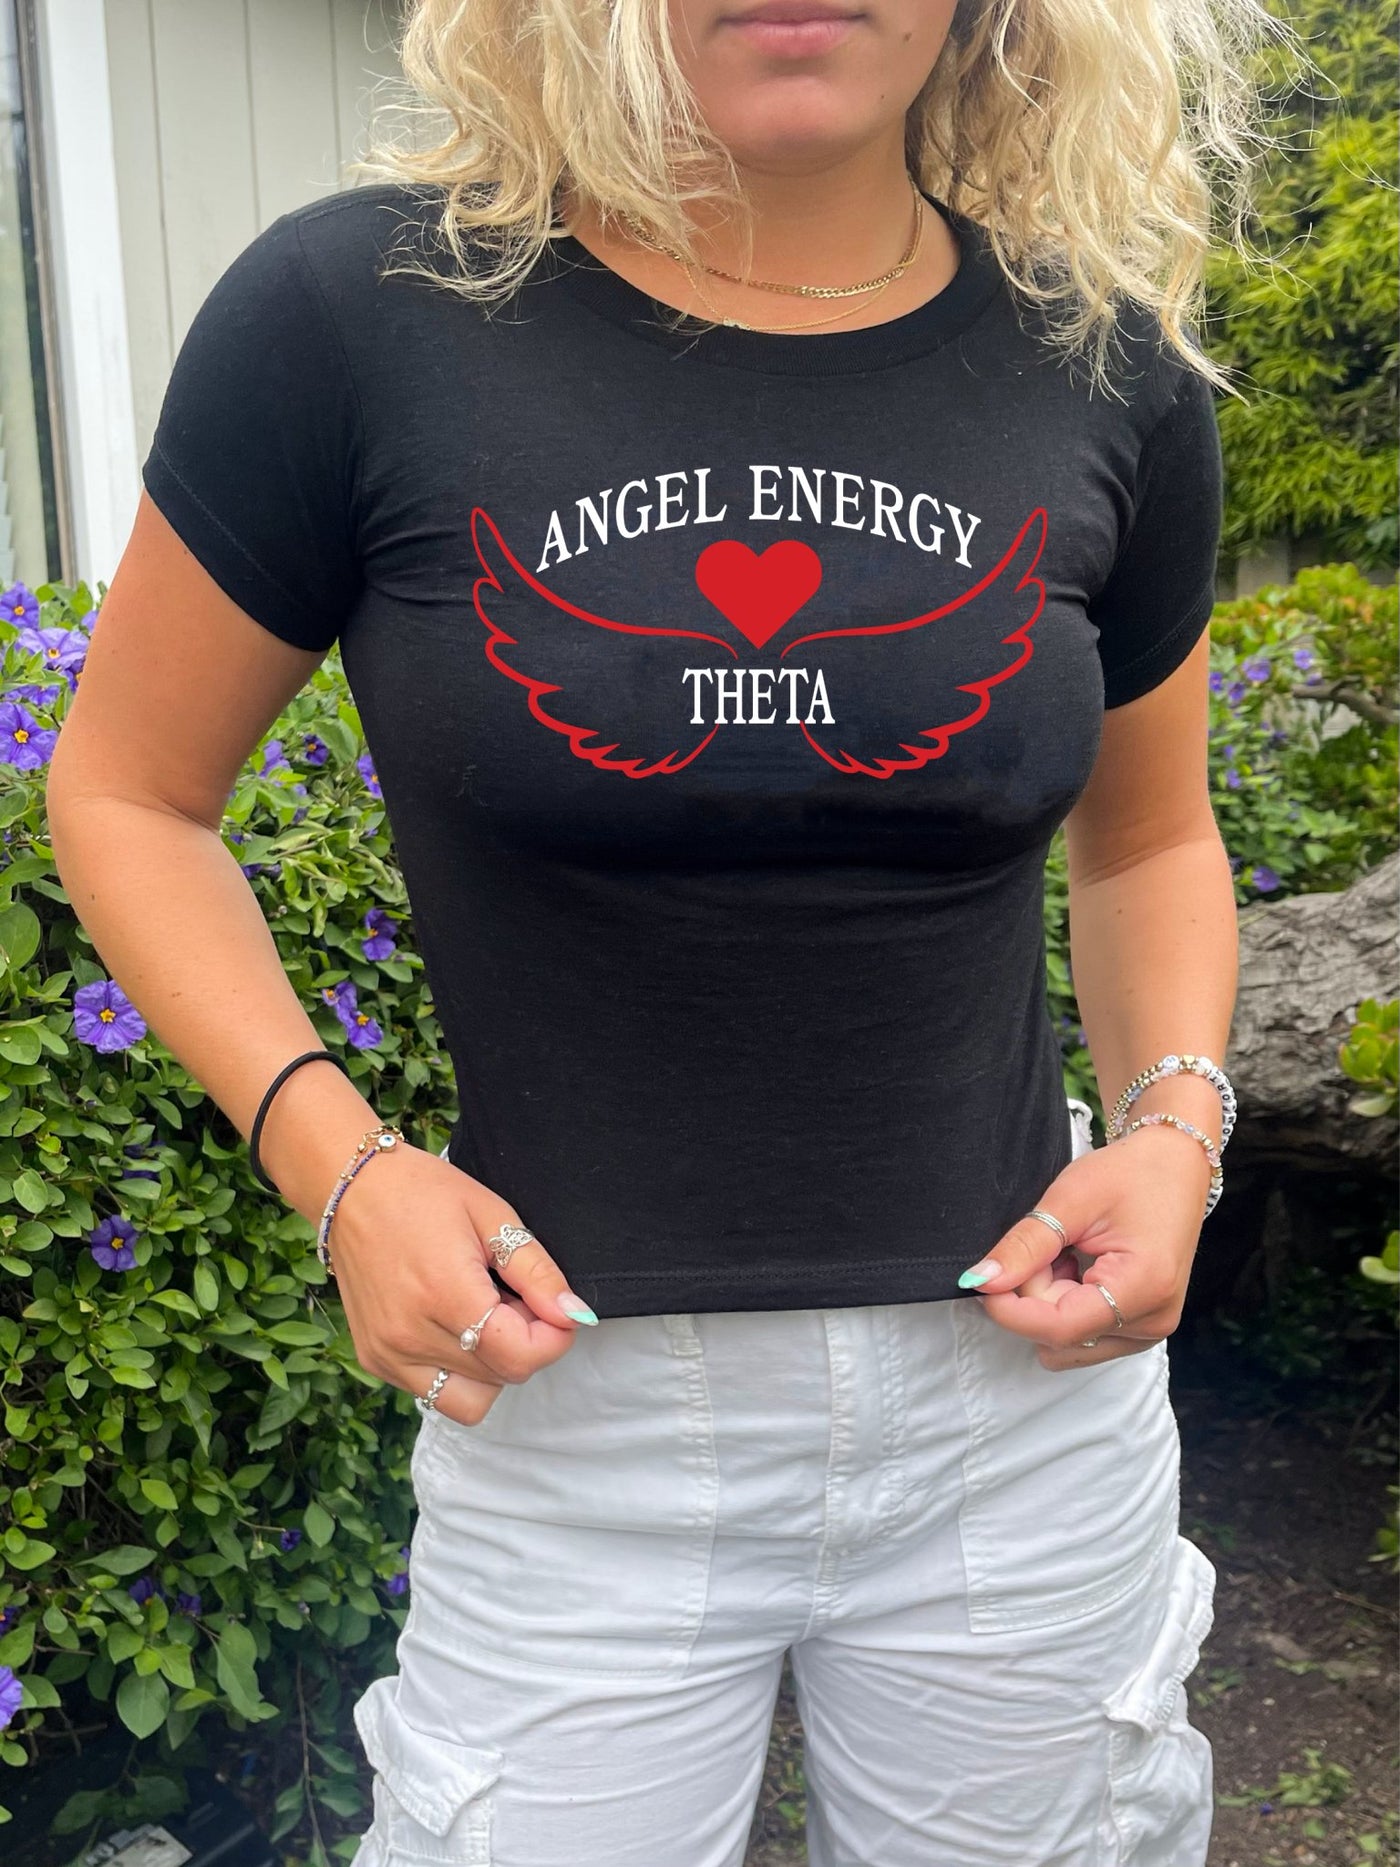 Kappa Alpha Theta Angel Energy Sorority Baby Tee Crop Top